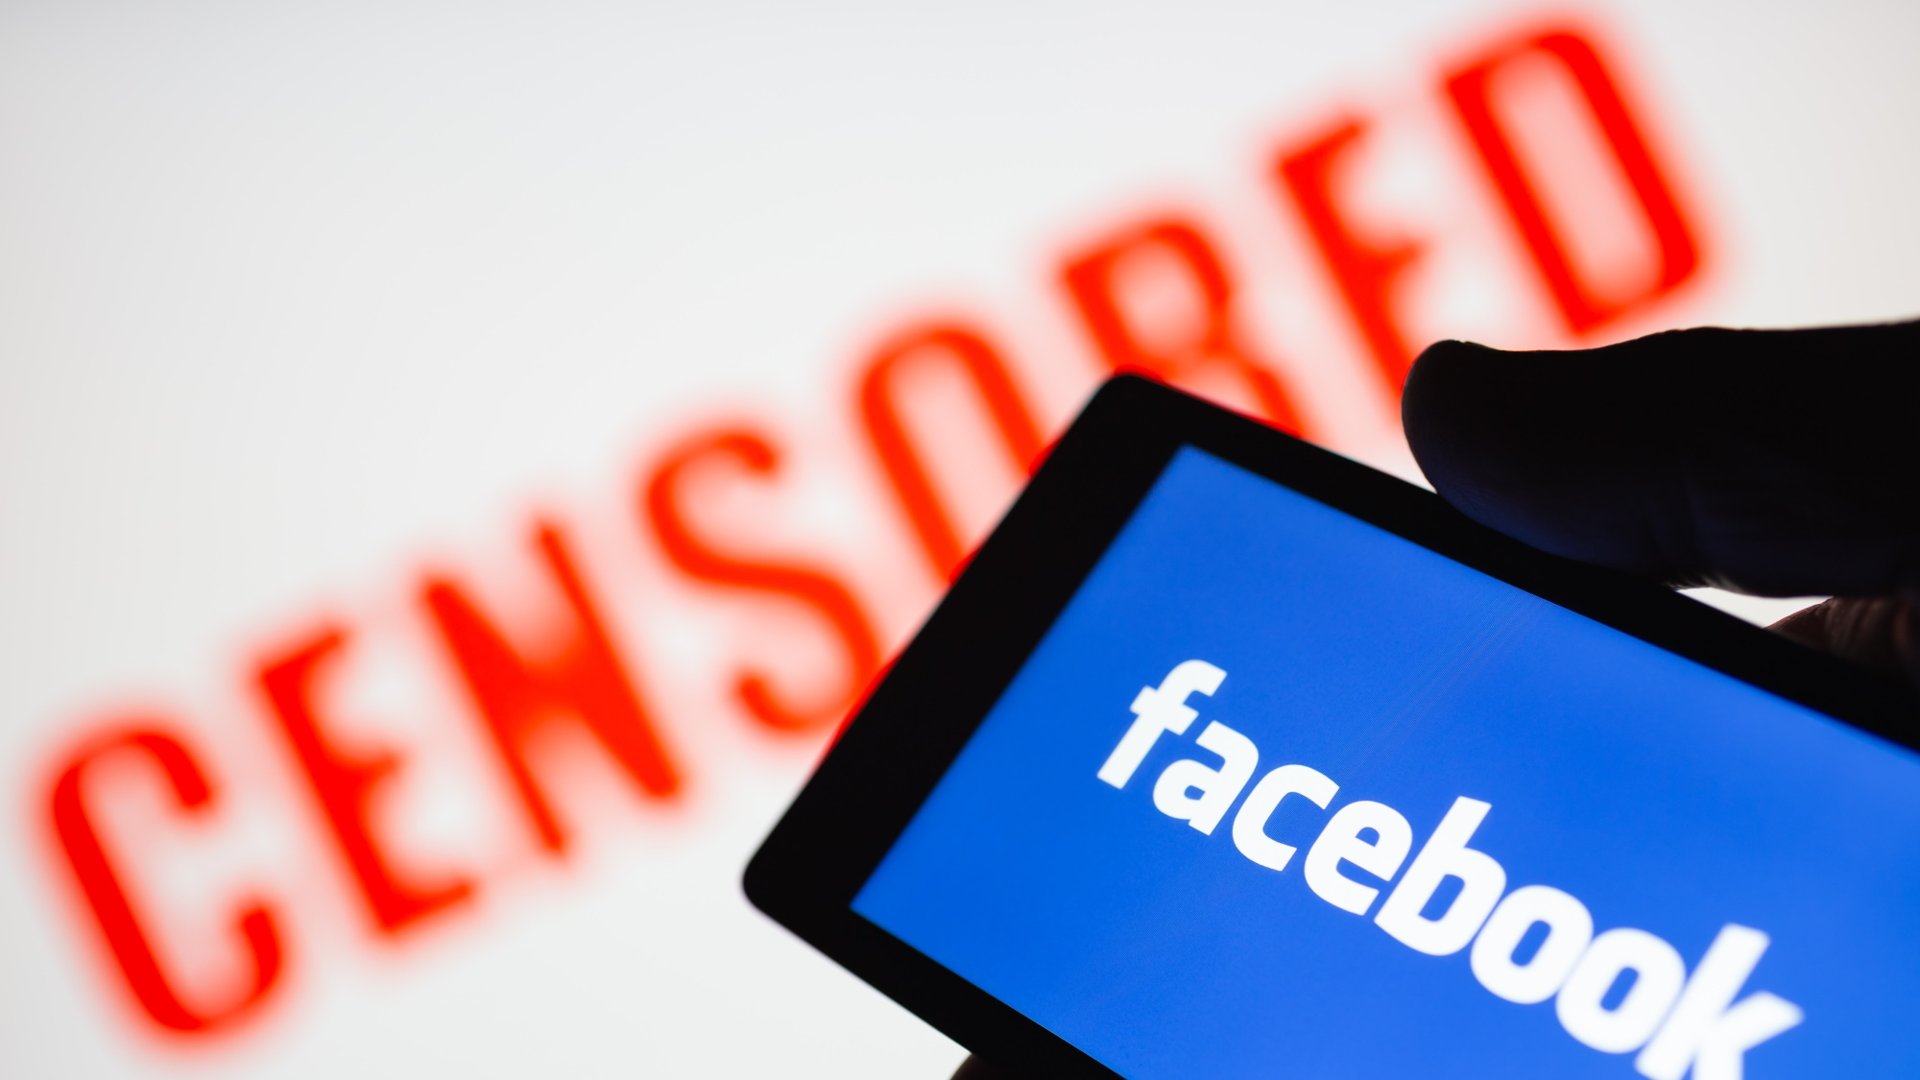 Téléphone intelligent en main montrant le logo Facebook. Texte censuré rouge flou sur fond